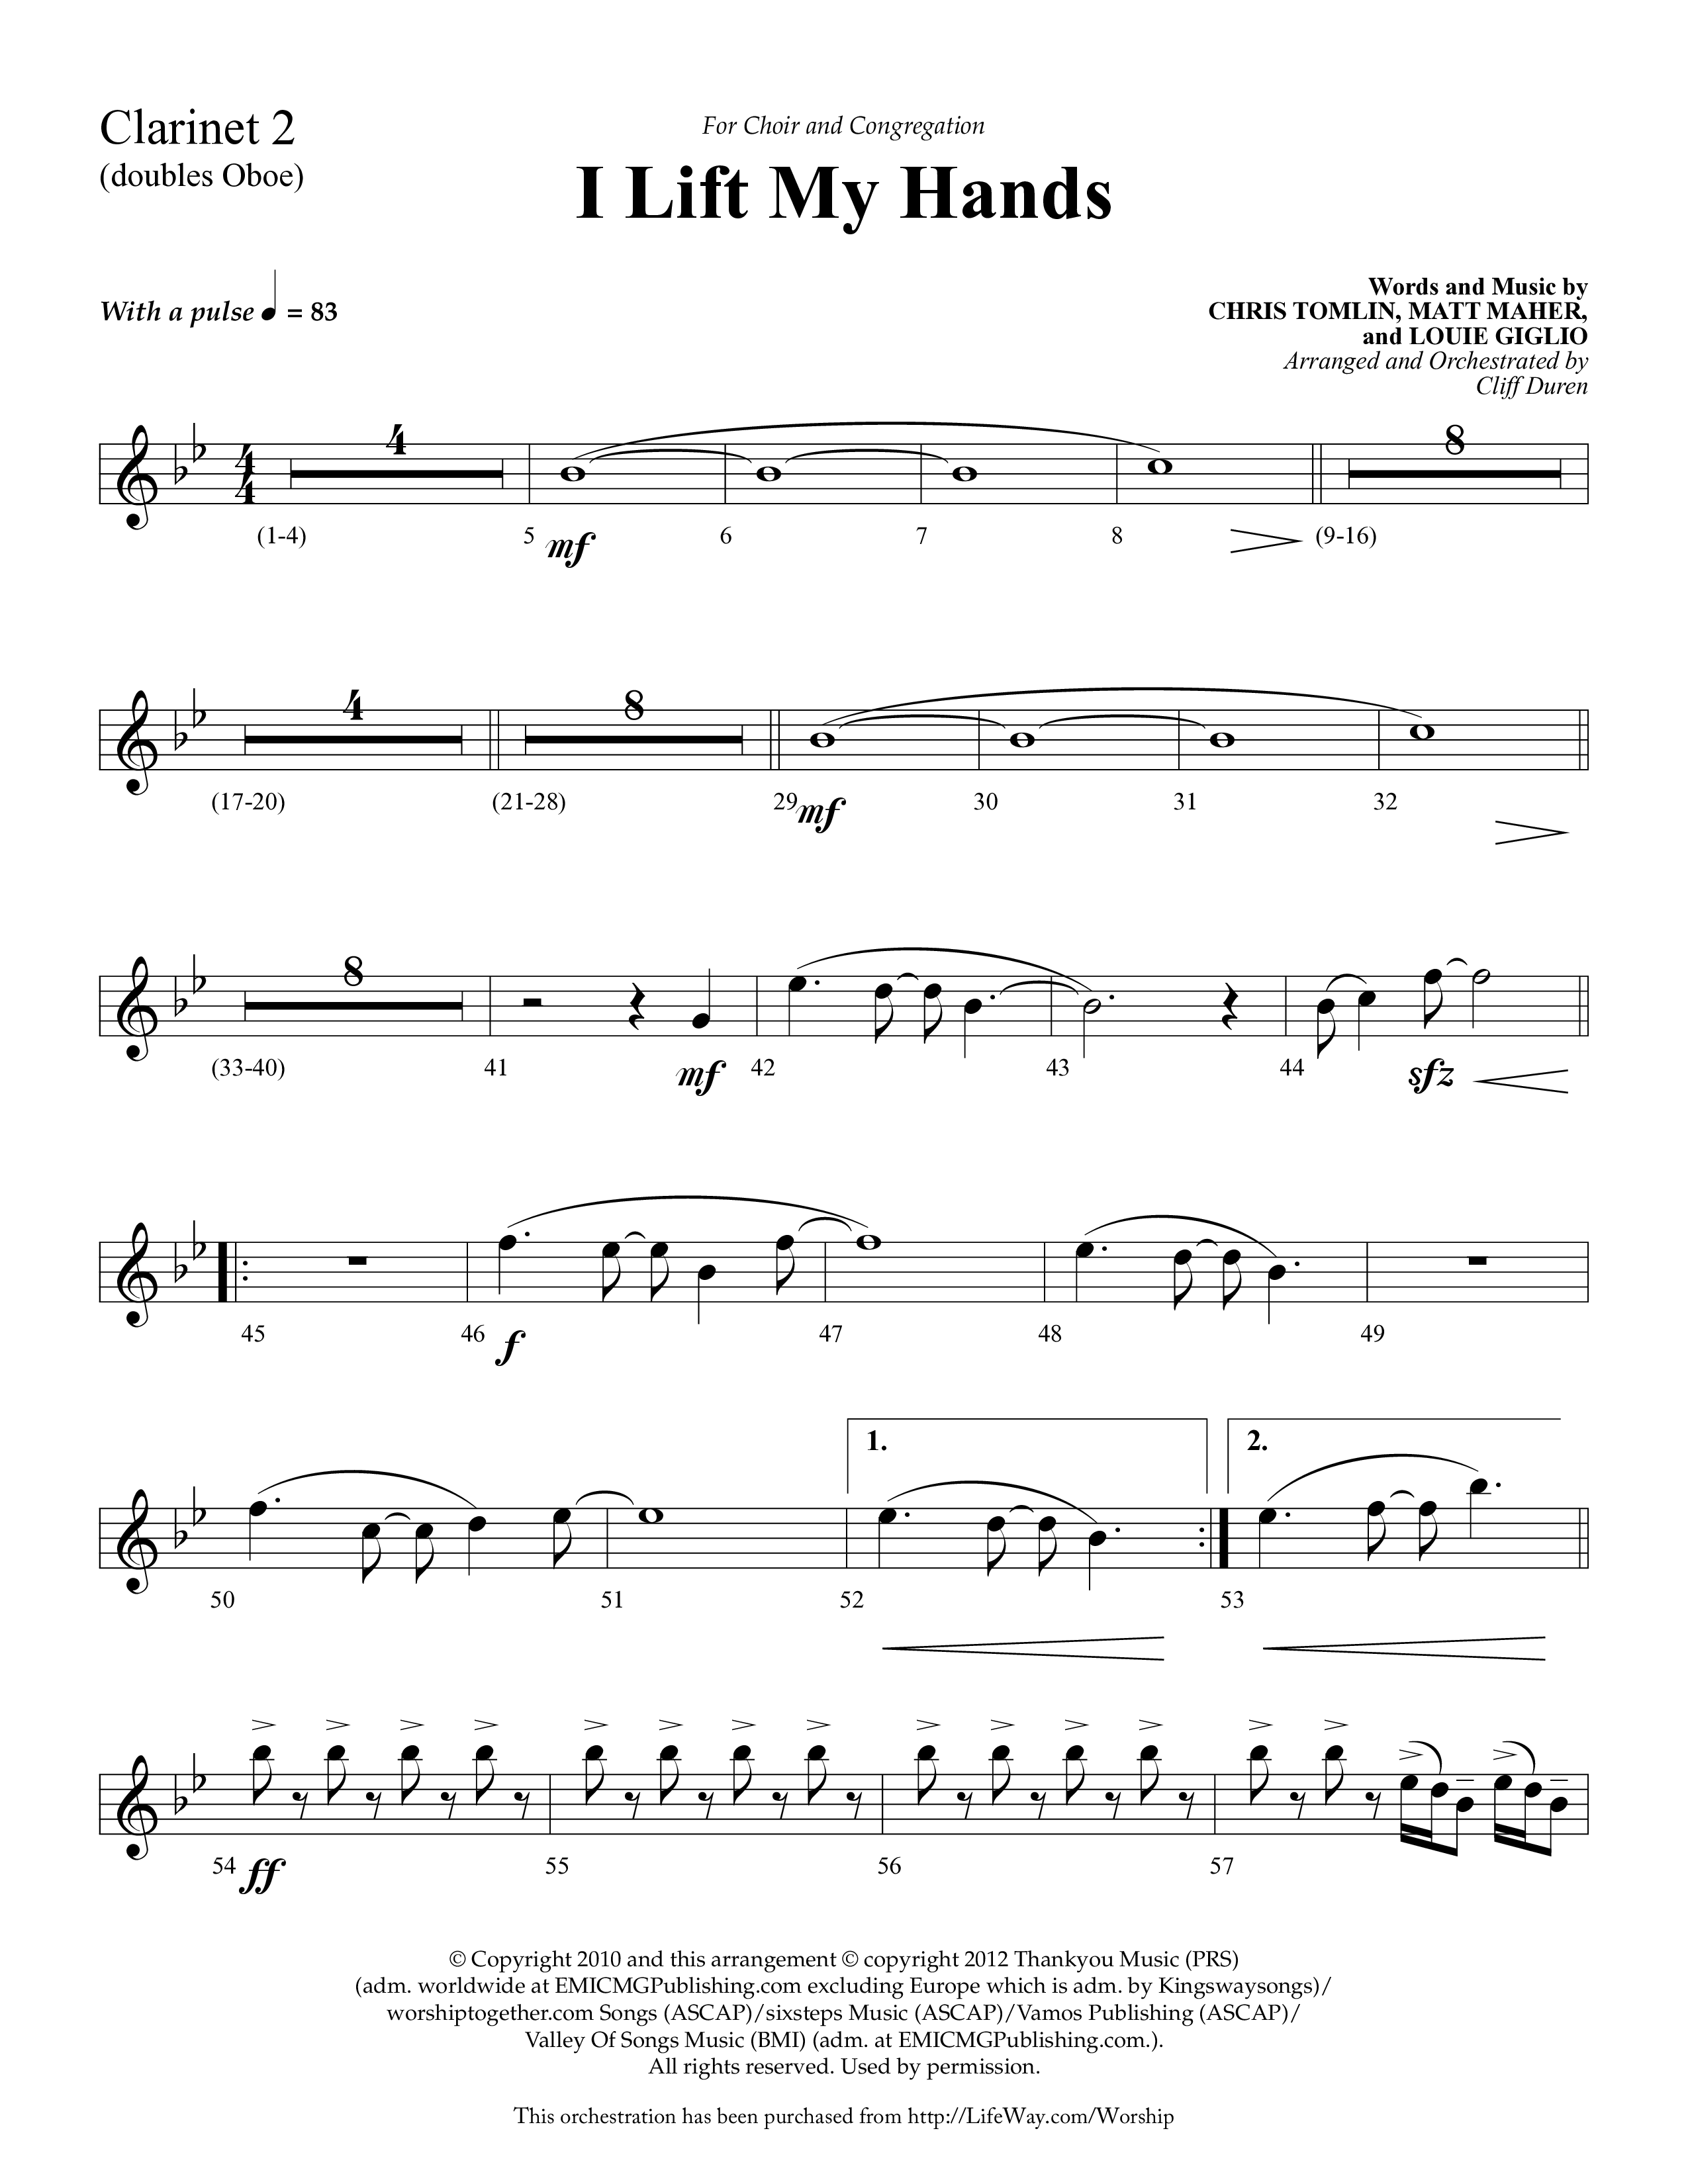 I Lift My Hands (Choral Anthem SATB) Clarinet 1/2 (Lifeway Choral / Arr. Cliff Duren)